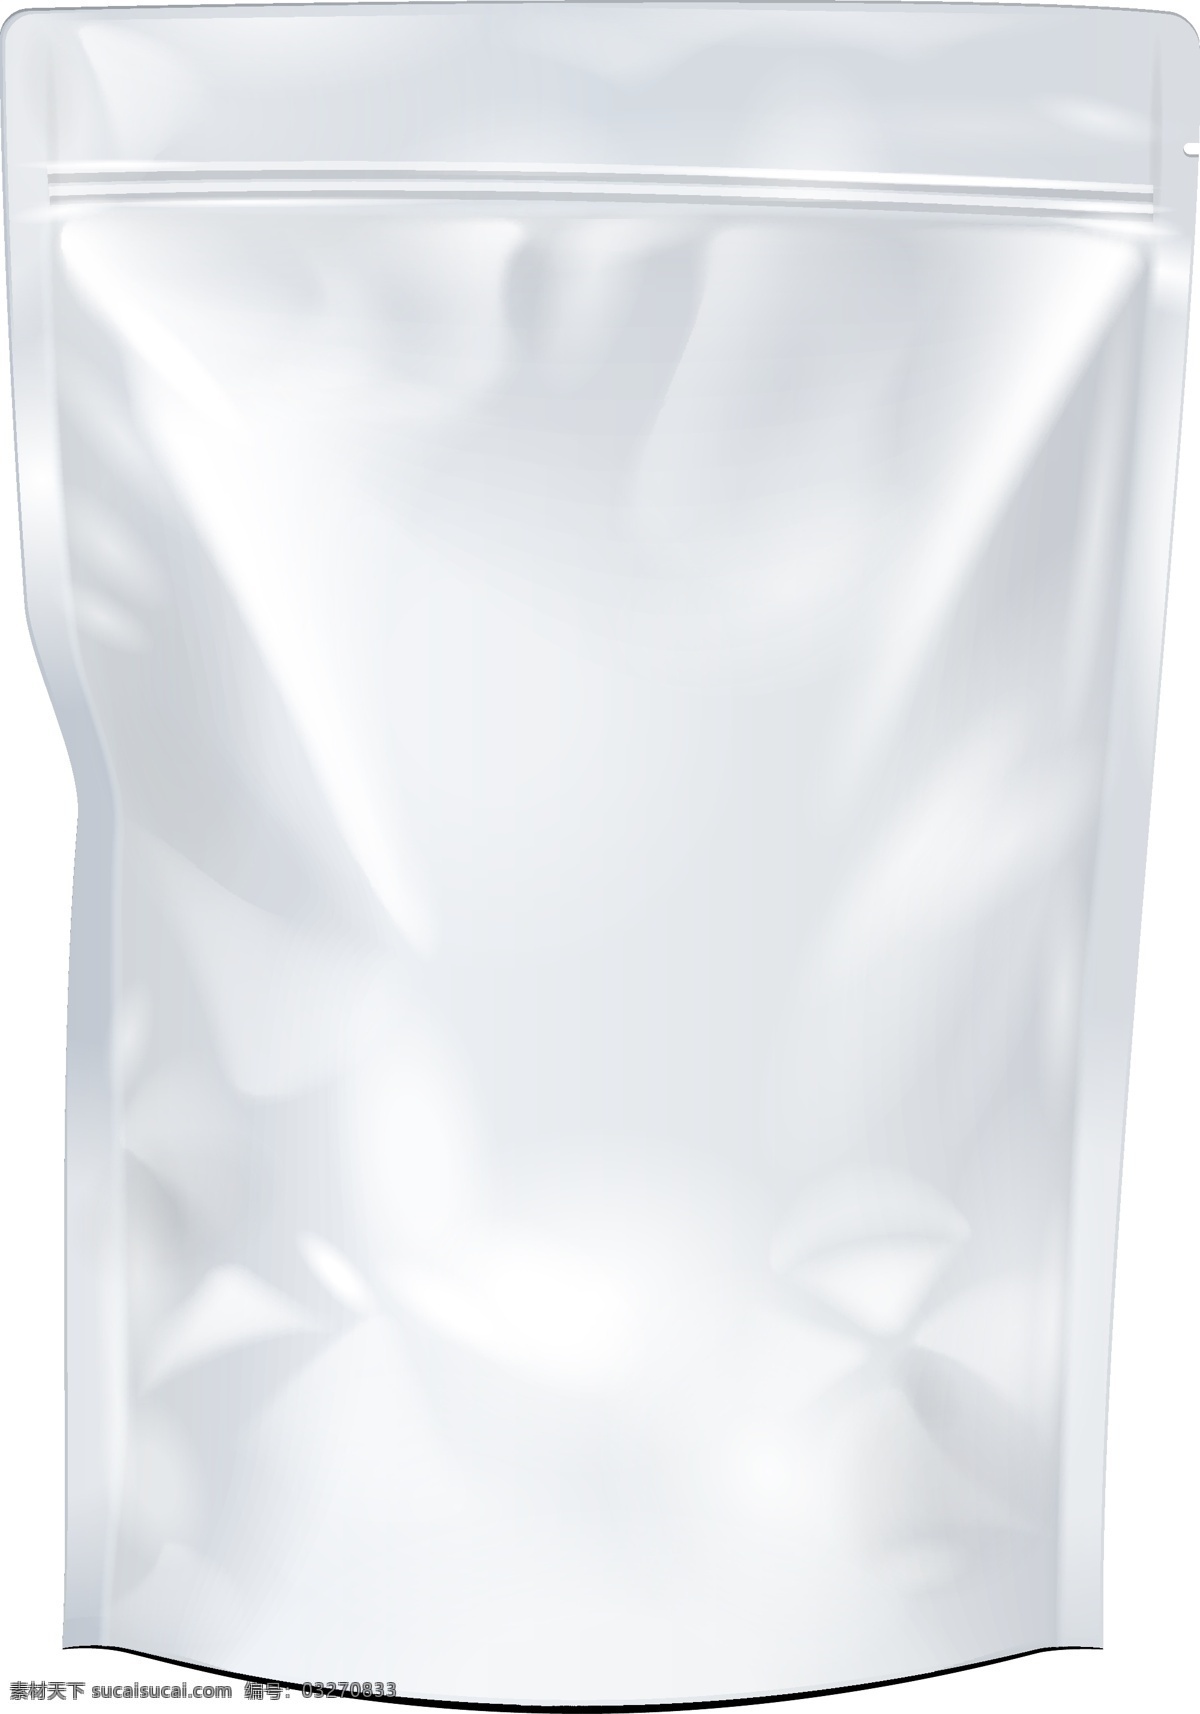 白色 包装袋 样机 坚果 零食 茶叶 包装 模板 vi